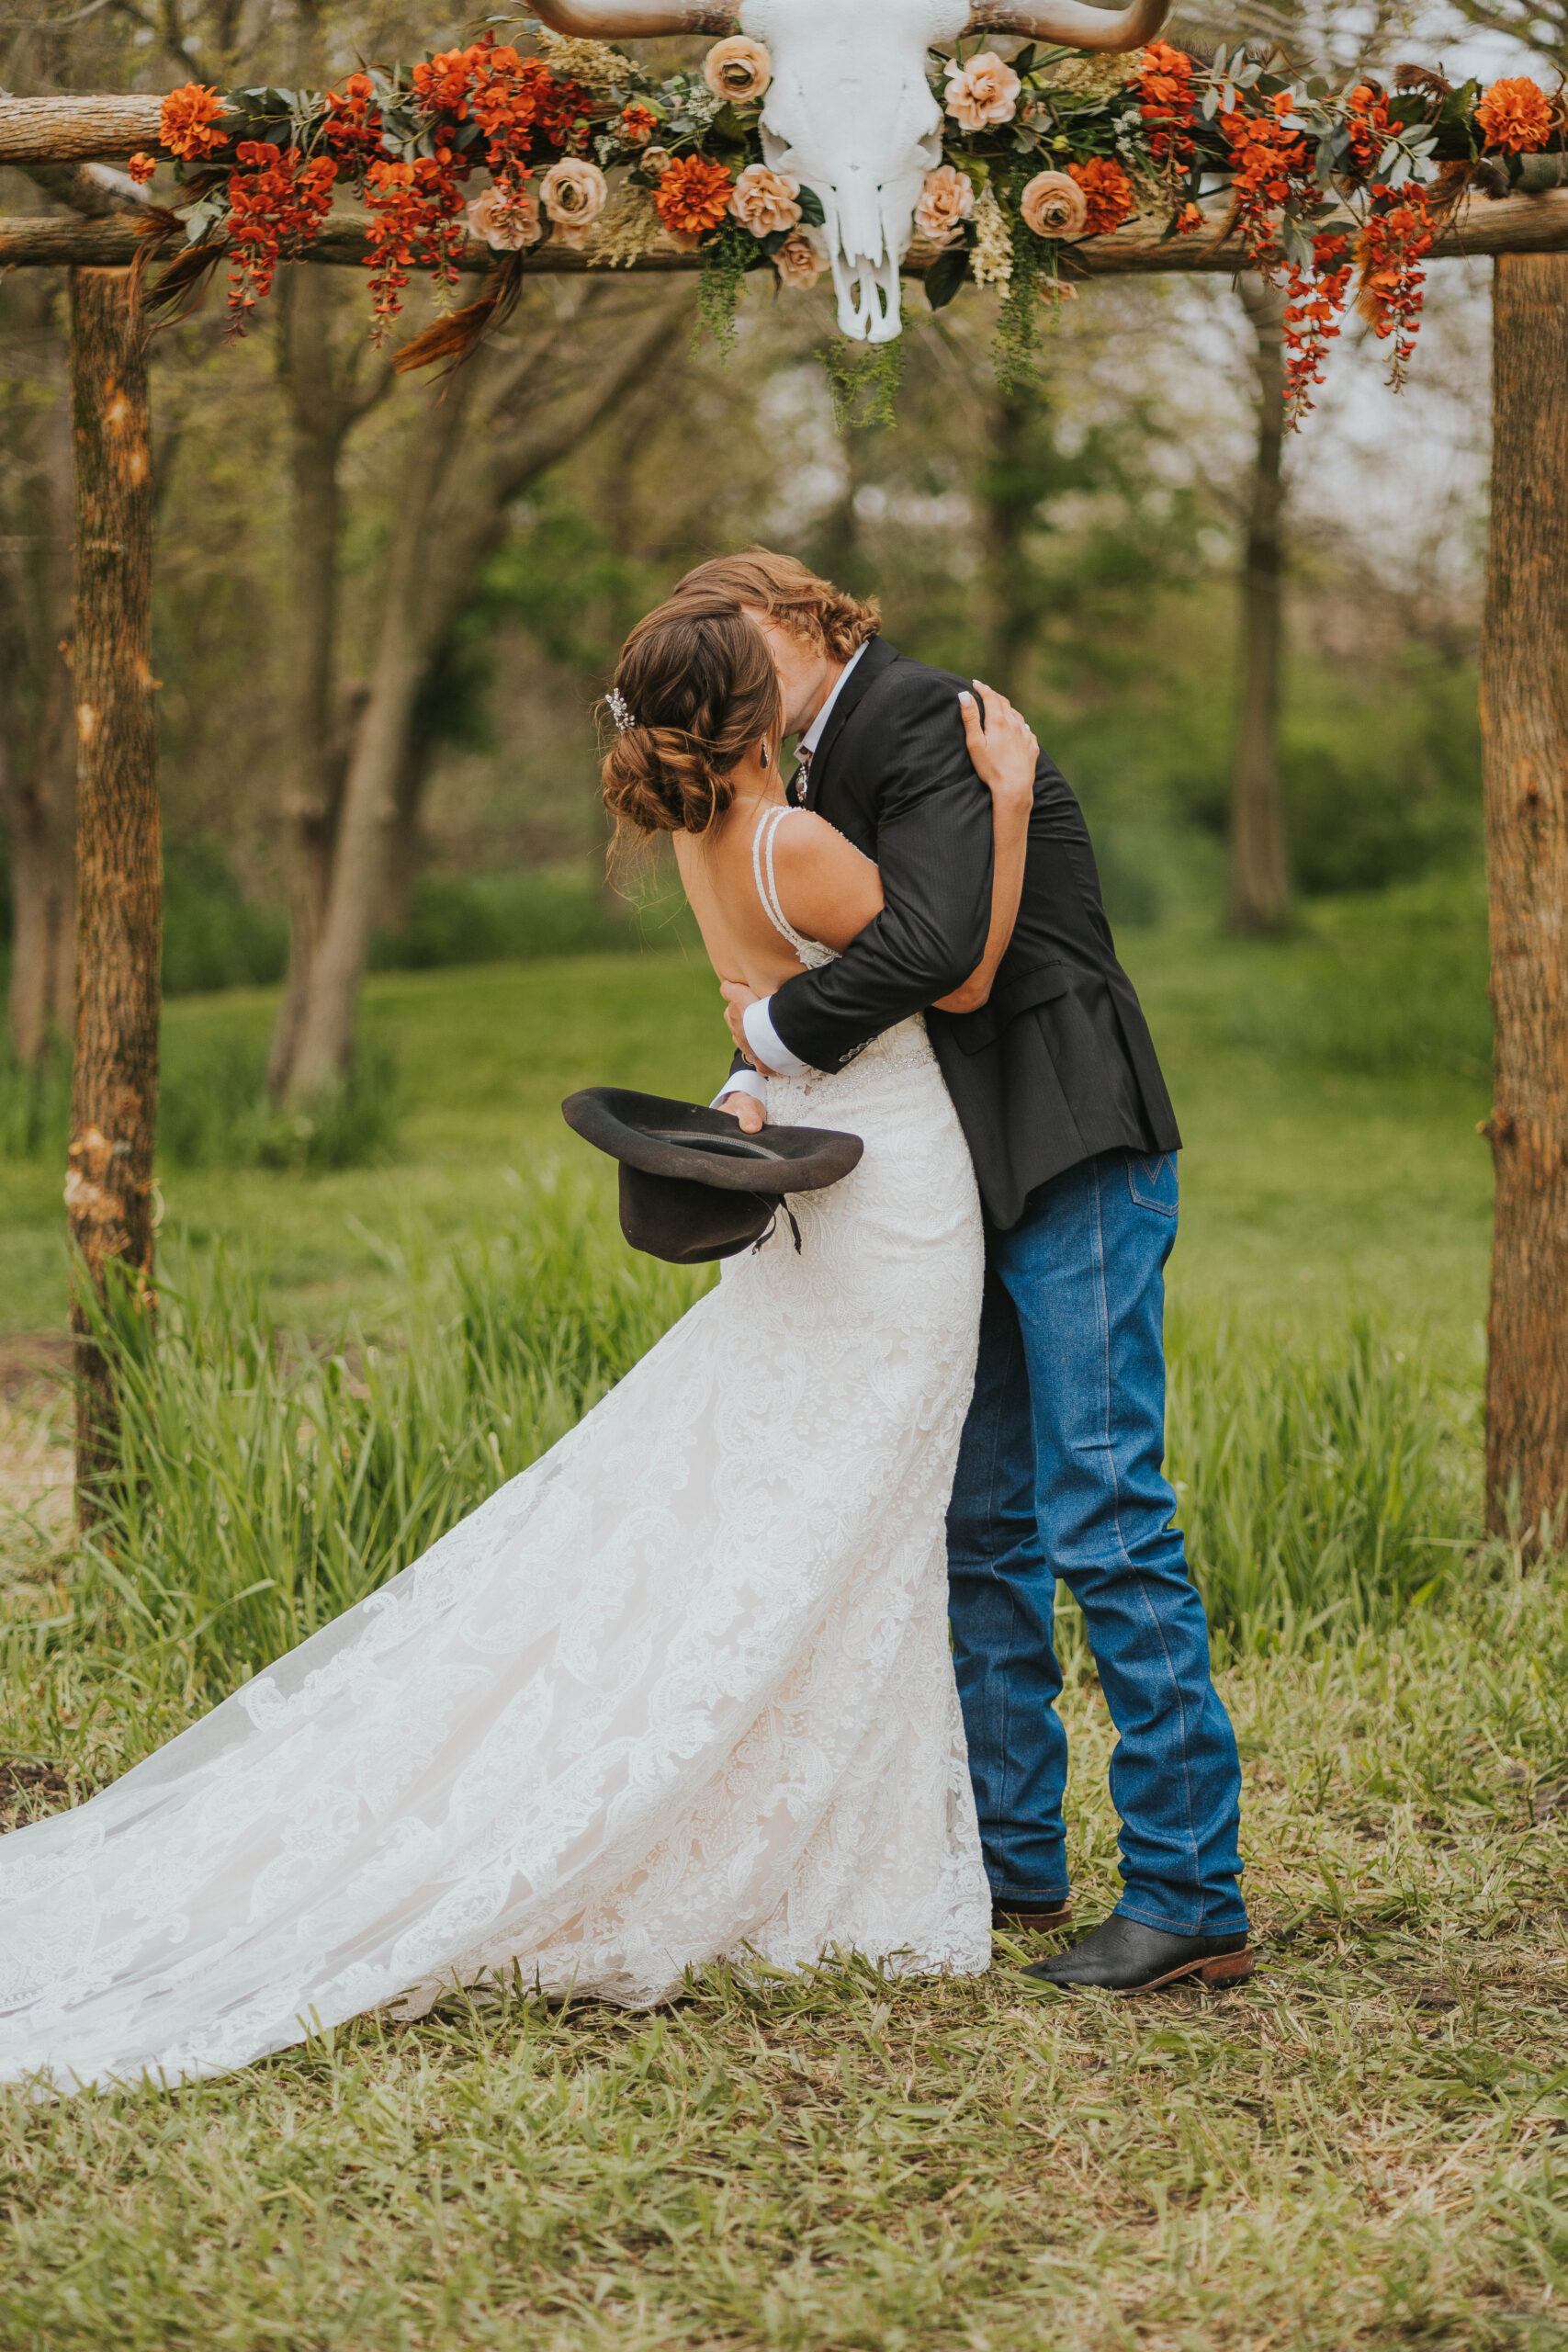 Wedding Ceremony on Farm near Davenport Iowa